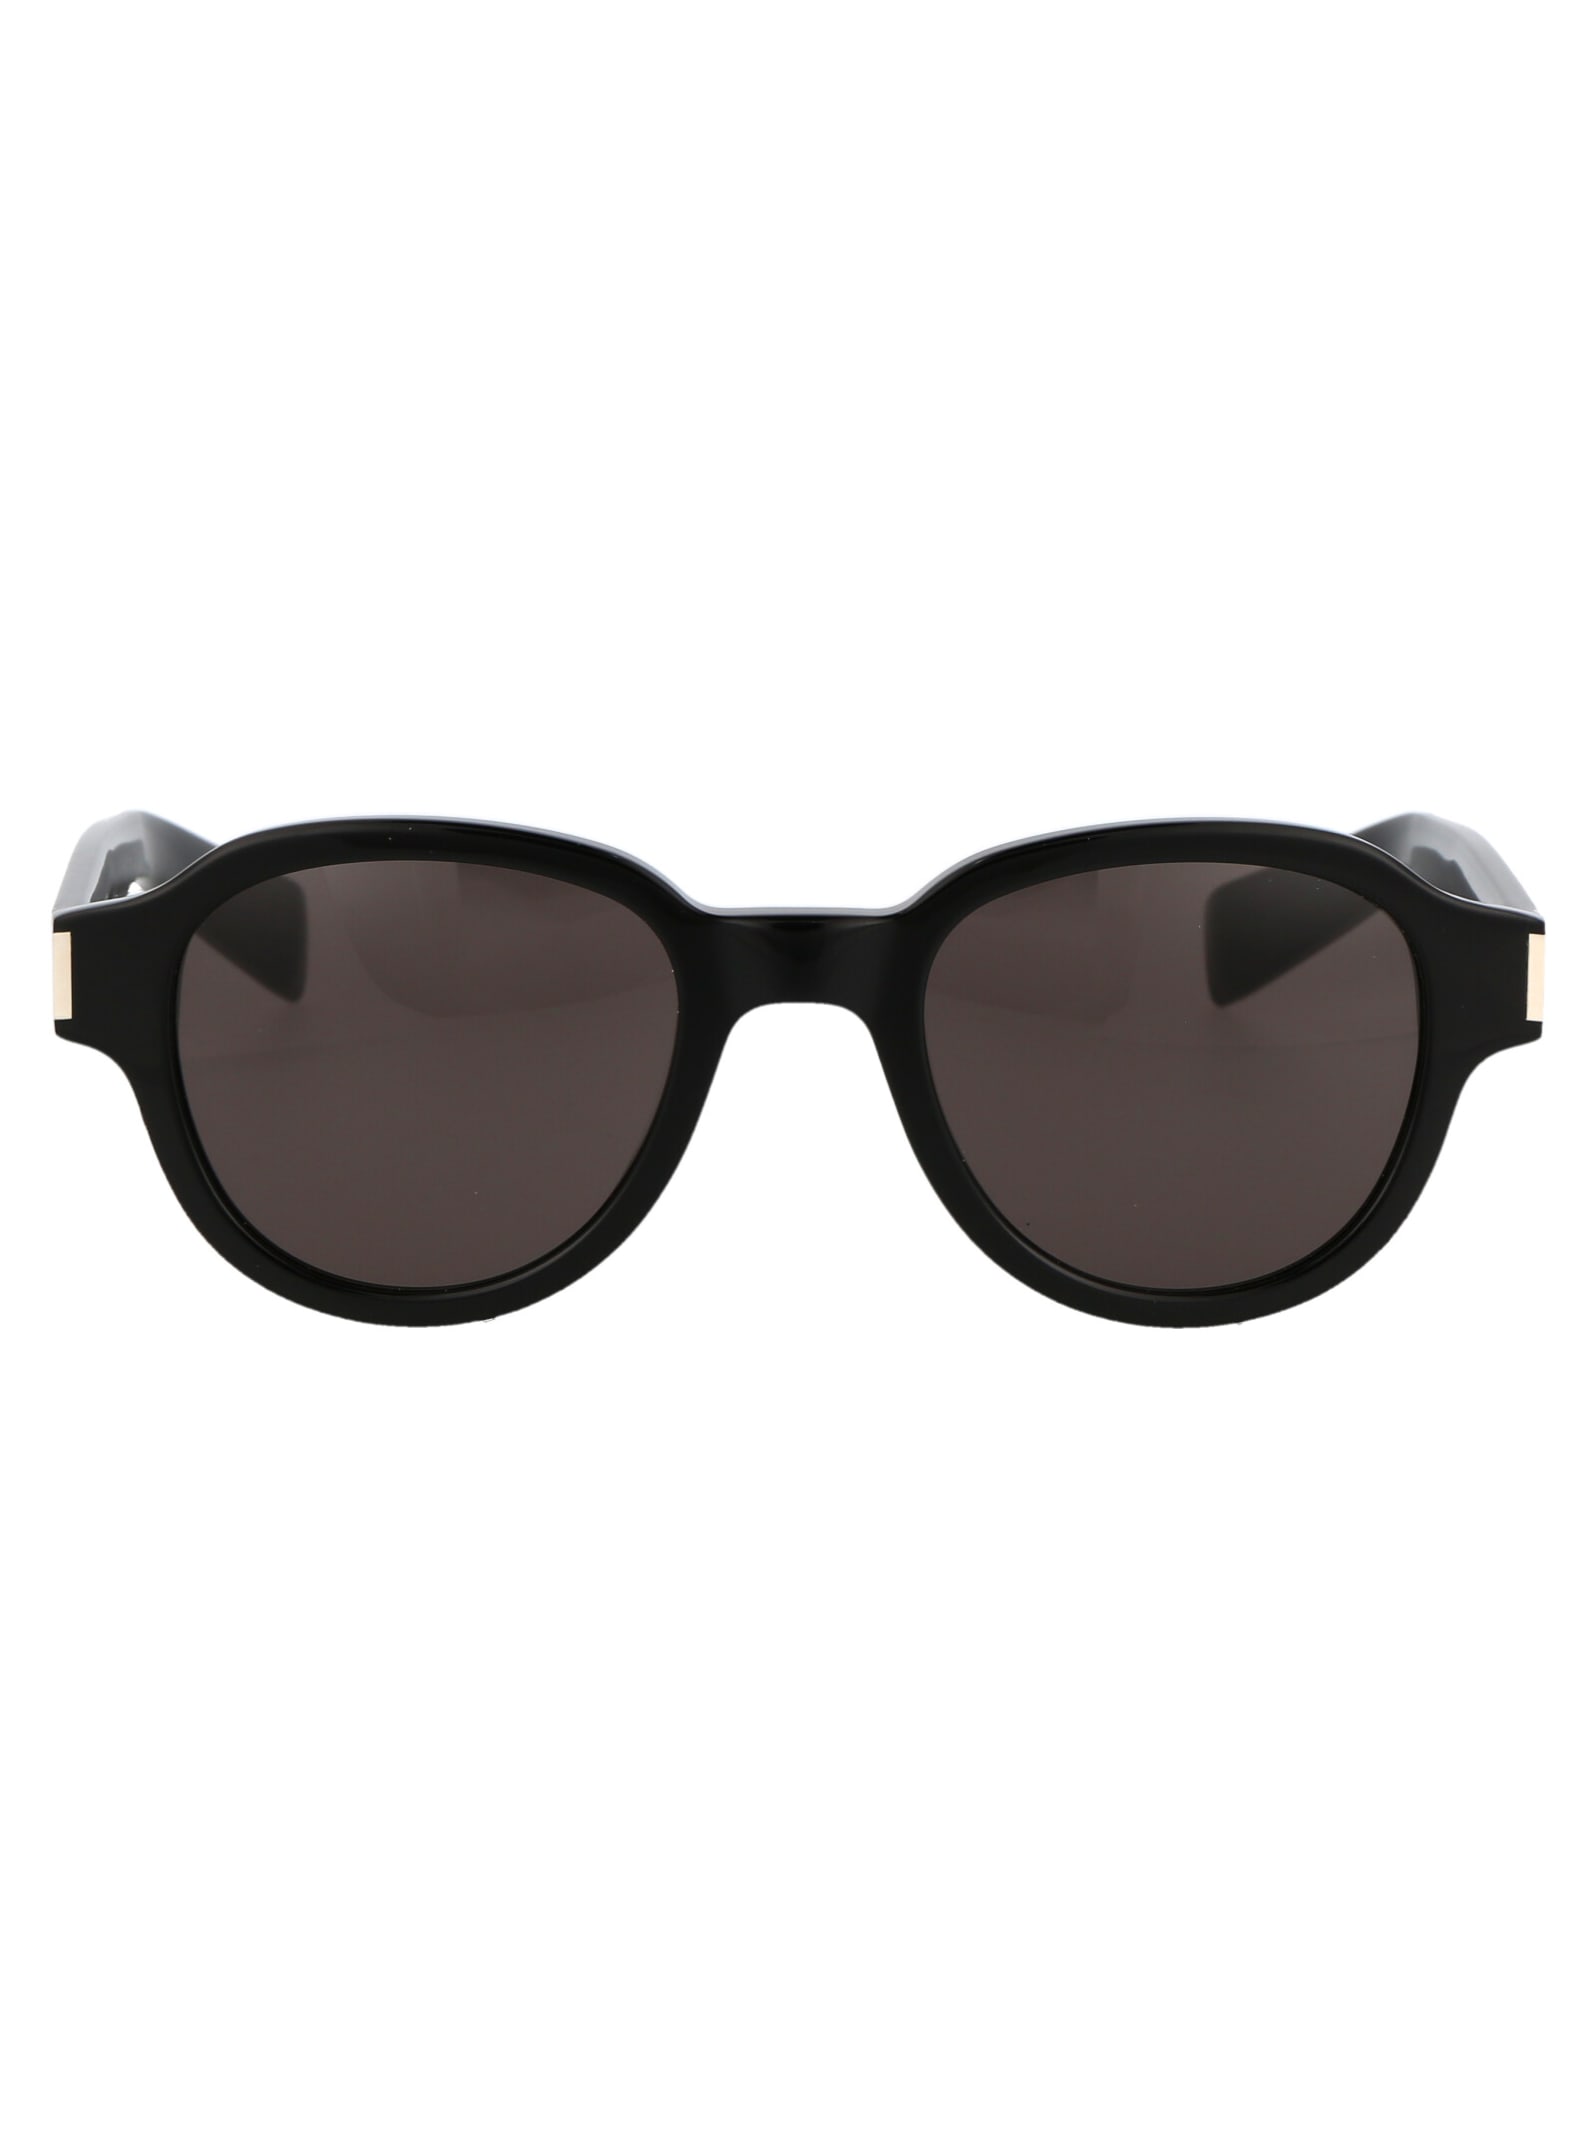 Saint Laurent Eyewear Sl 546 Sunglasses